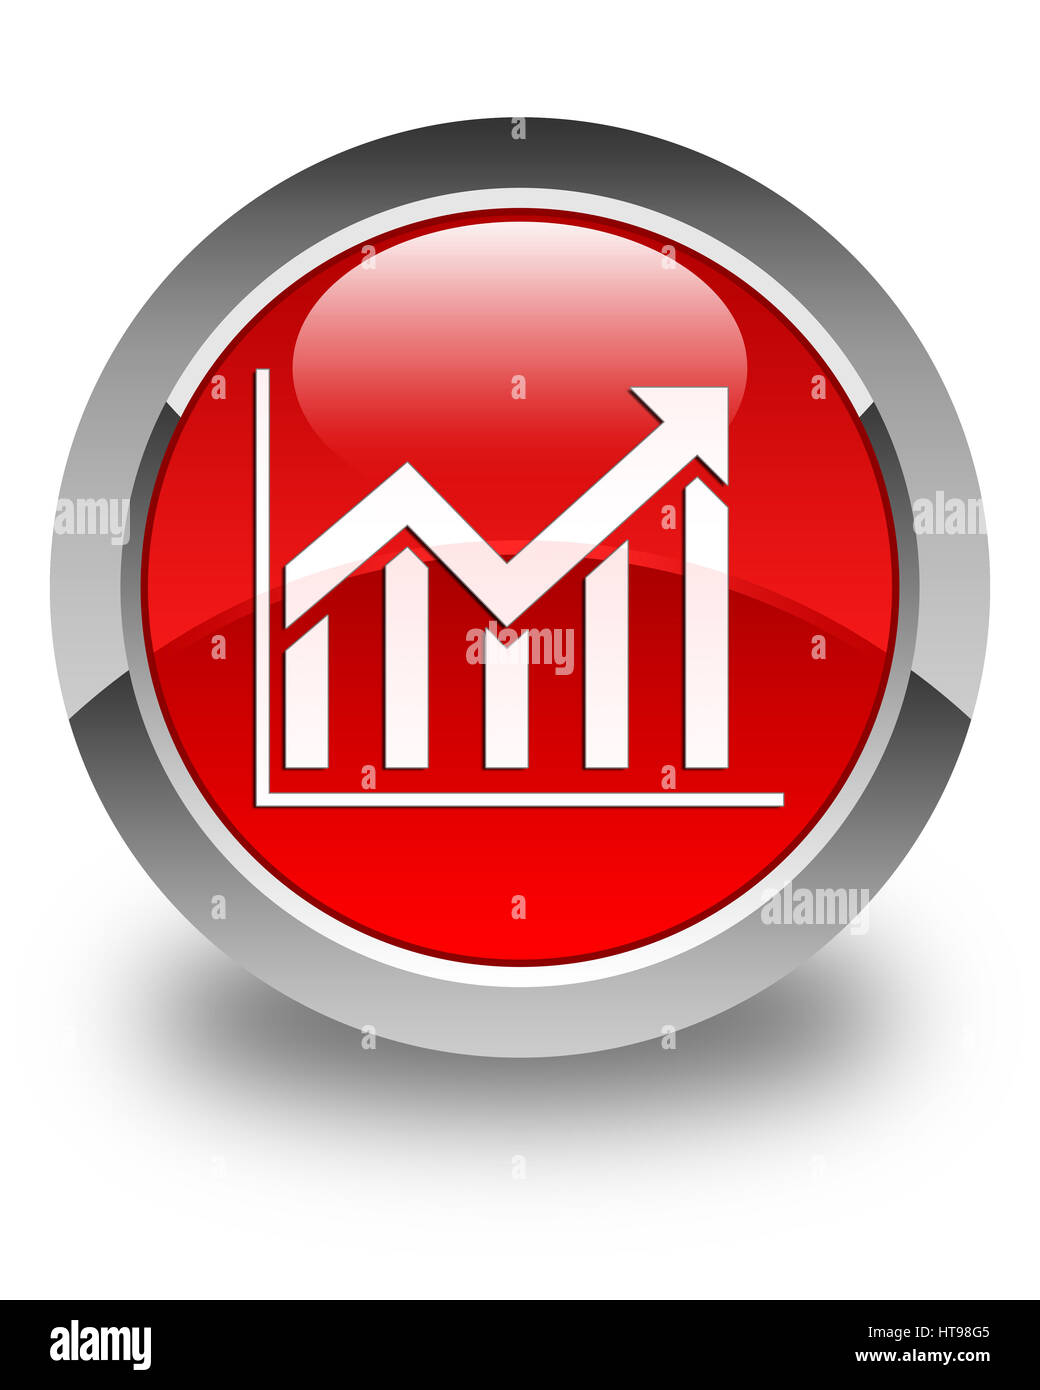 Icona statistiche isolato sul rosso lucido pulsante rotondo illustrazione astratta Foto Stock